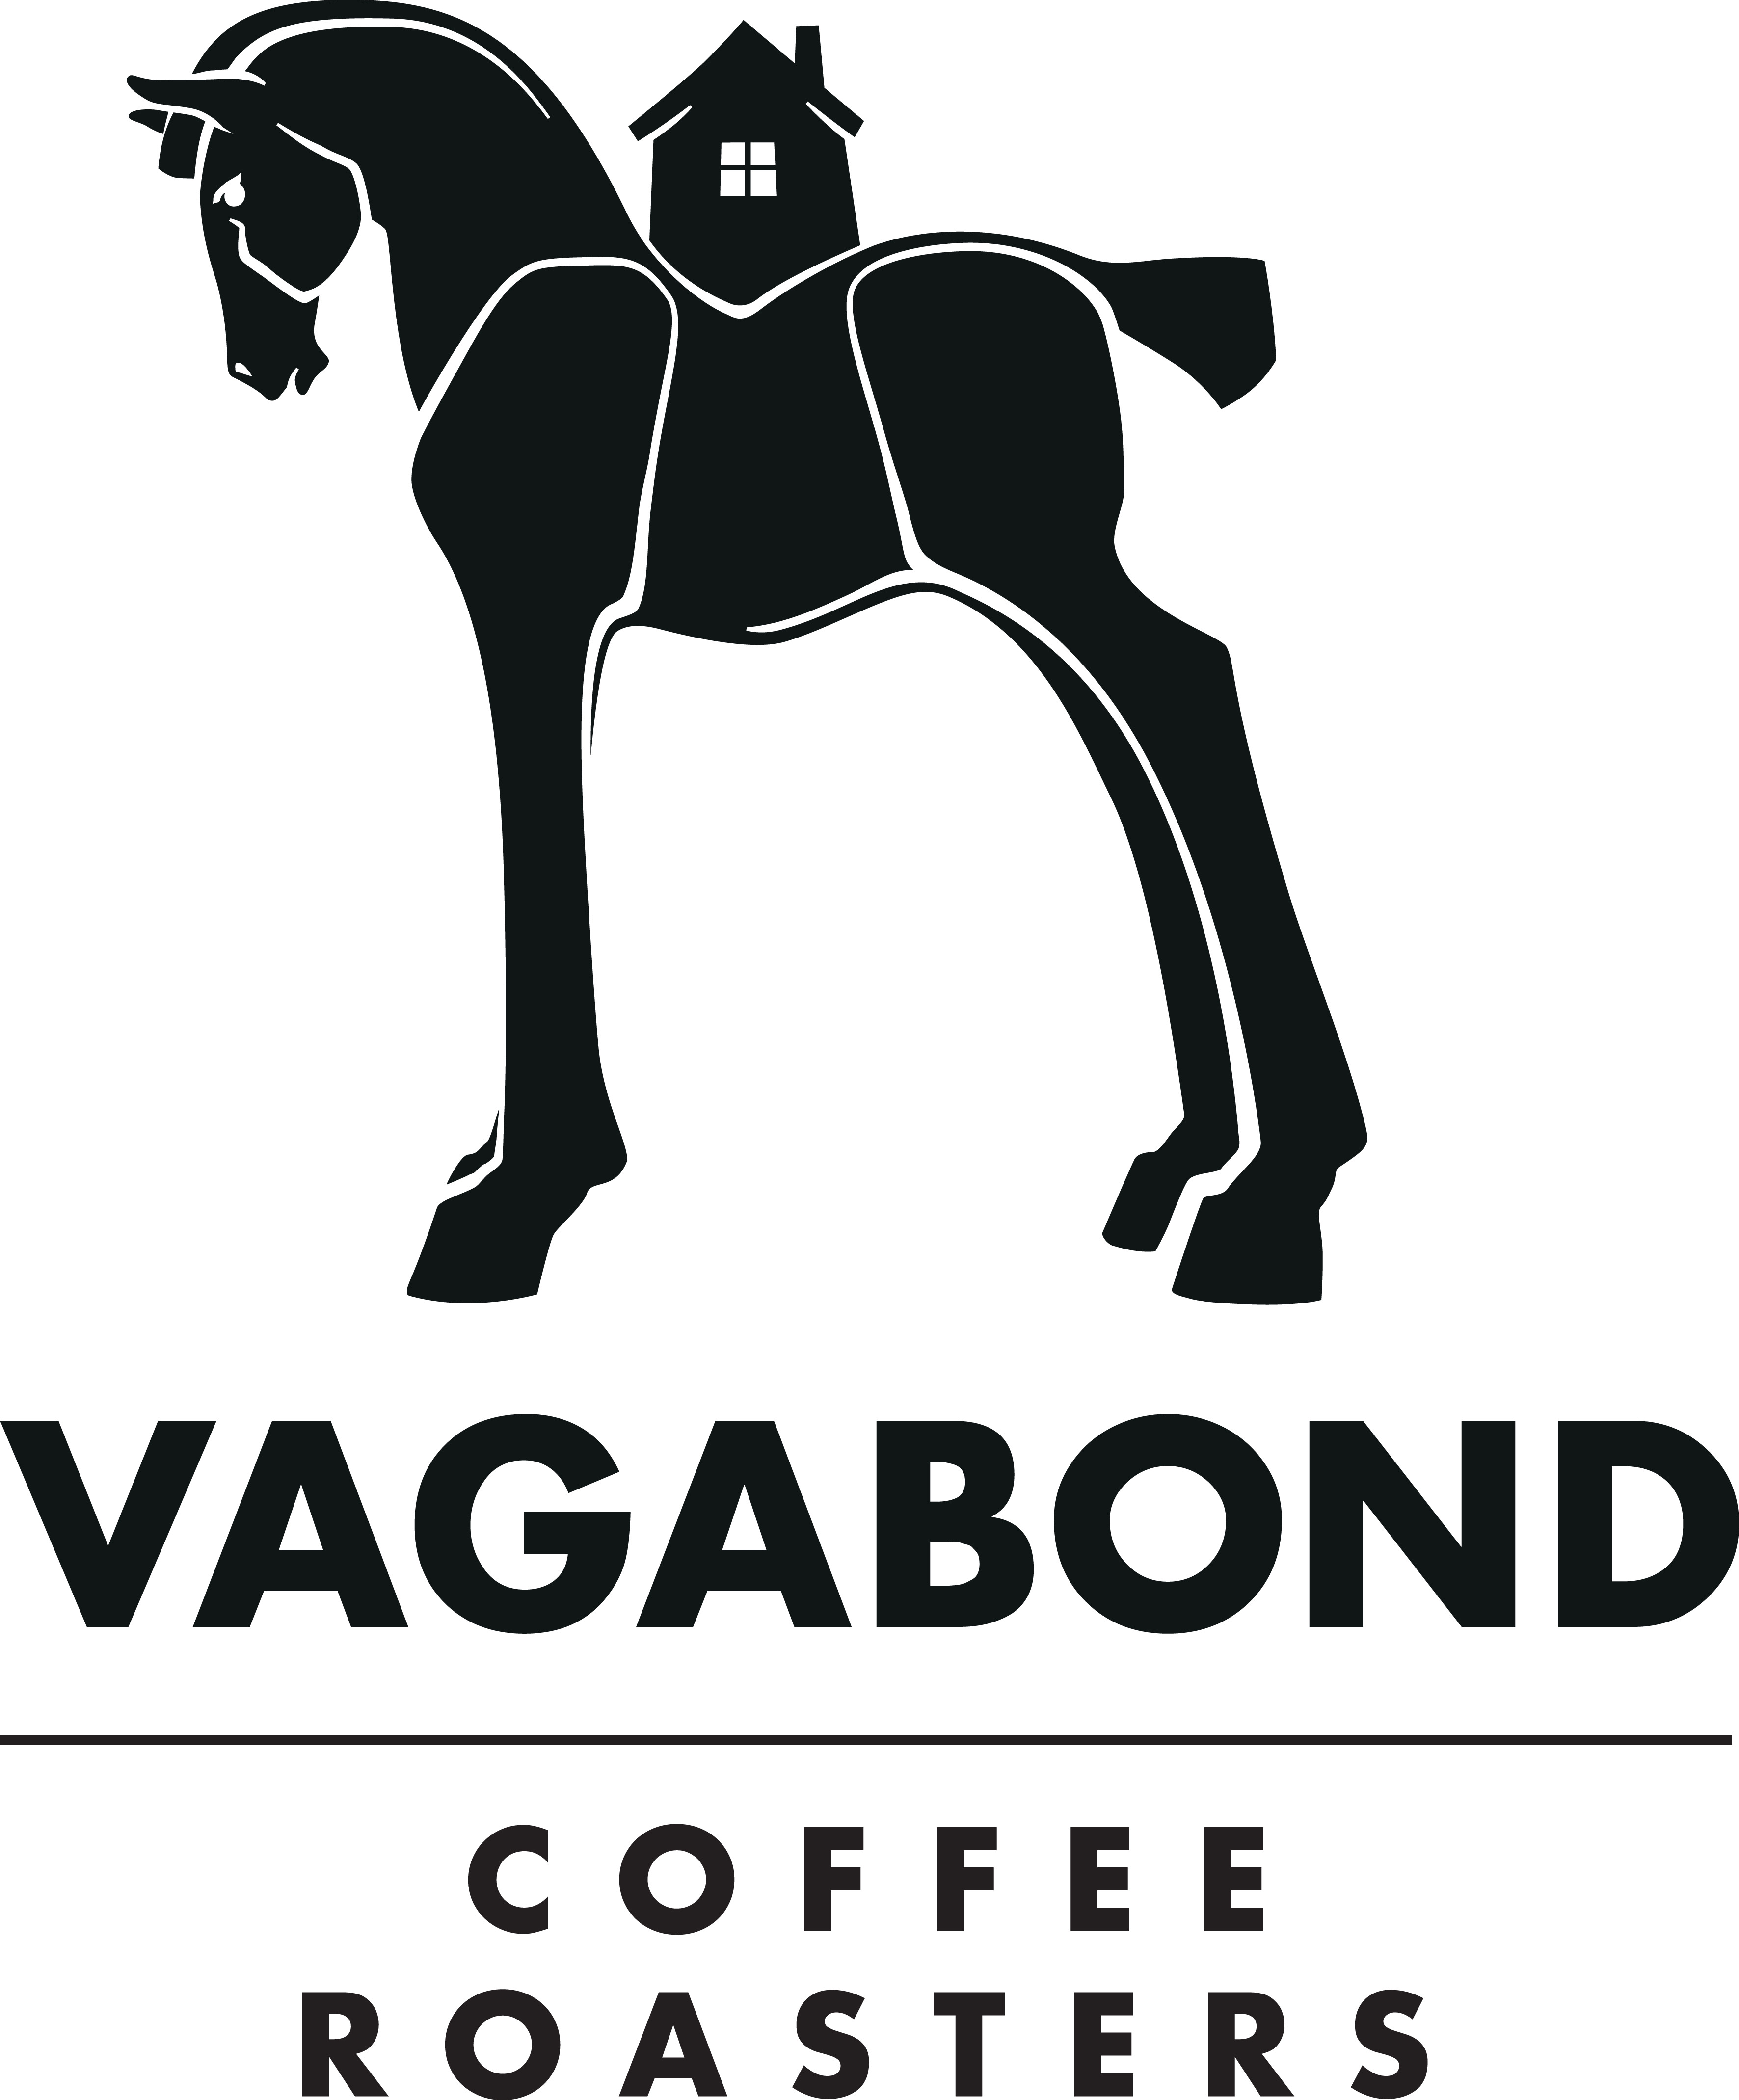 Vagabond Coffee Roasters